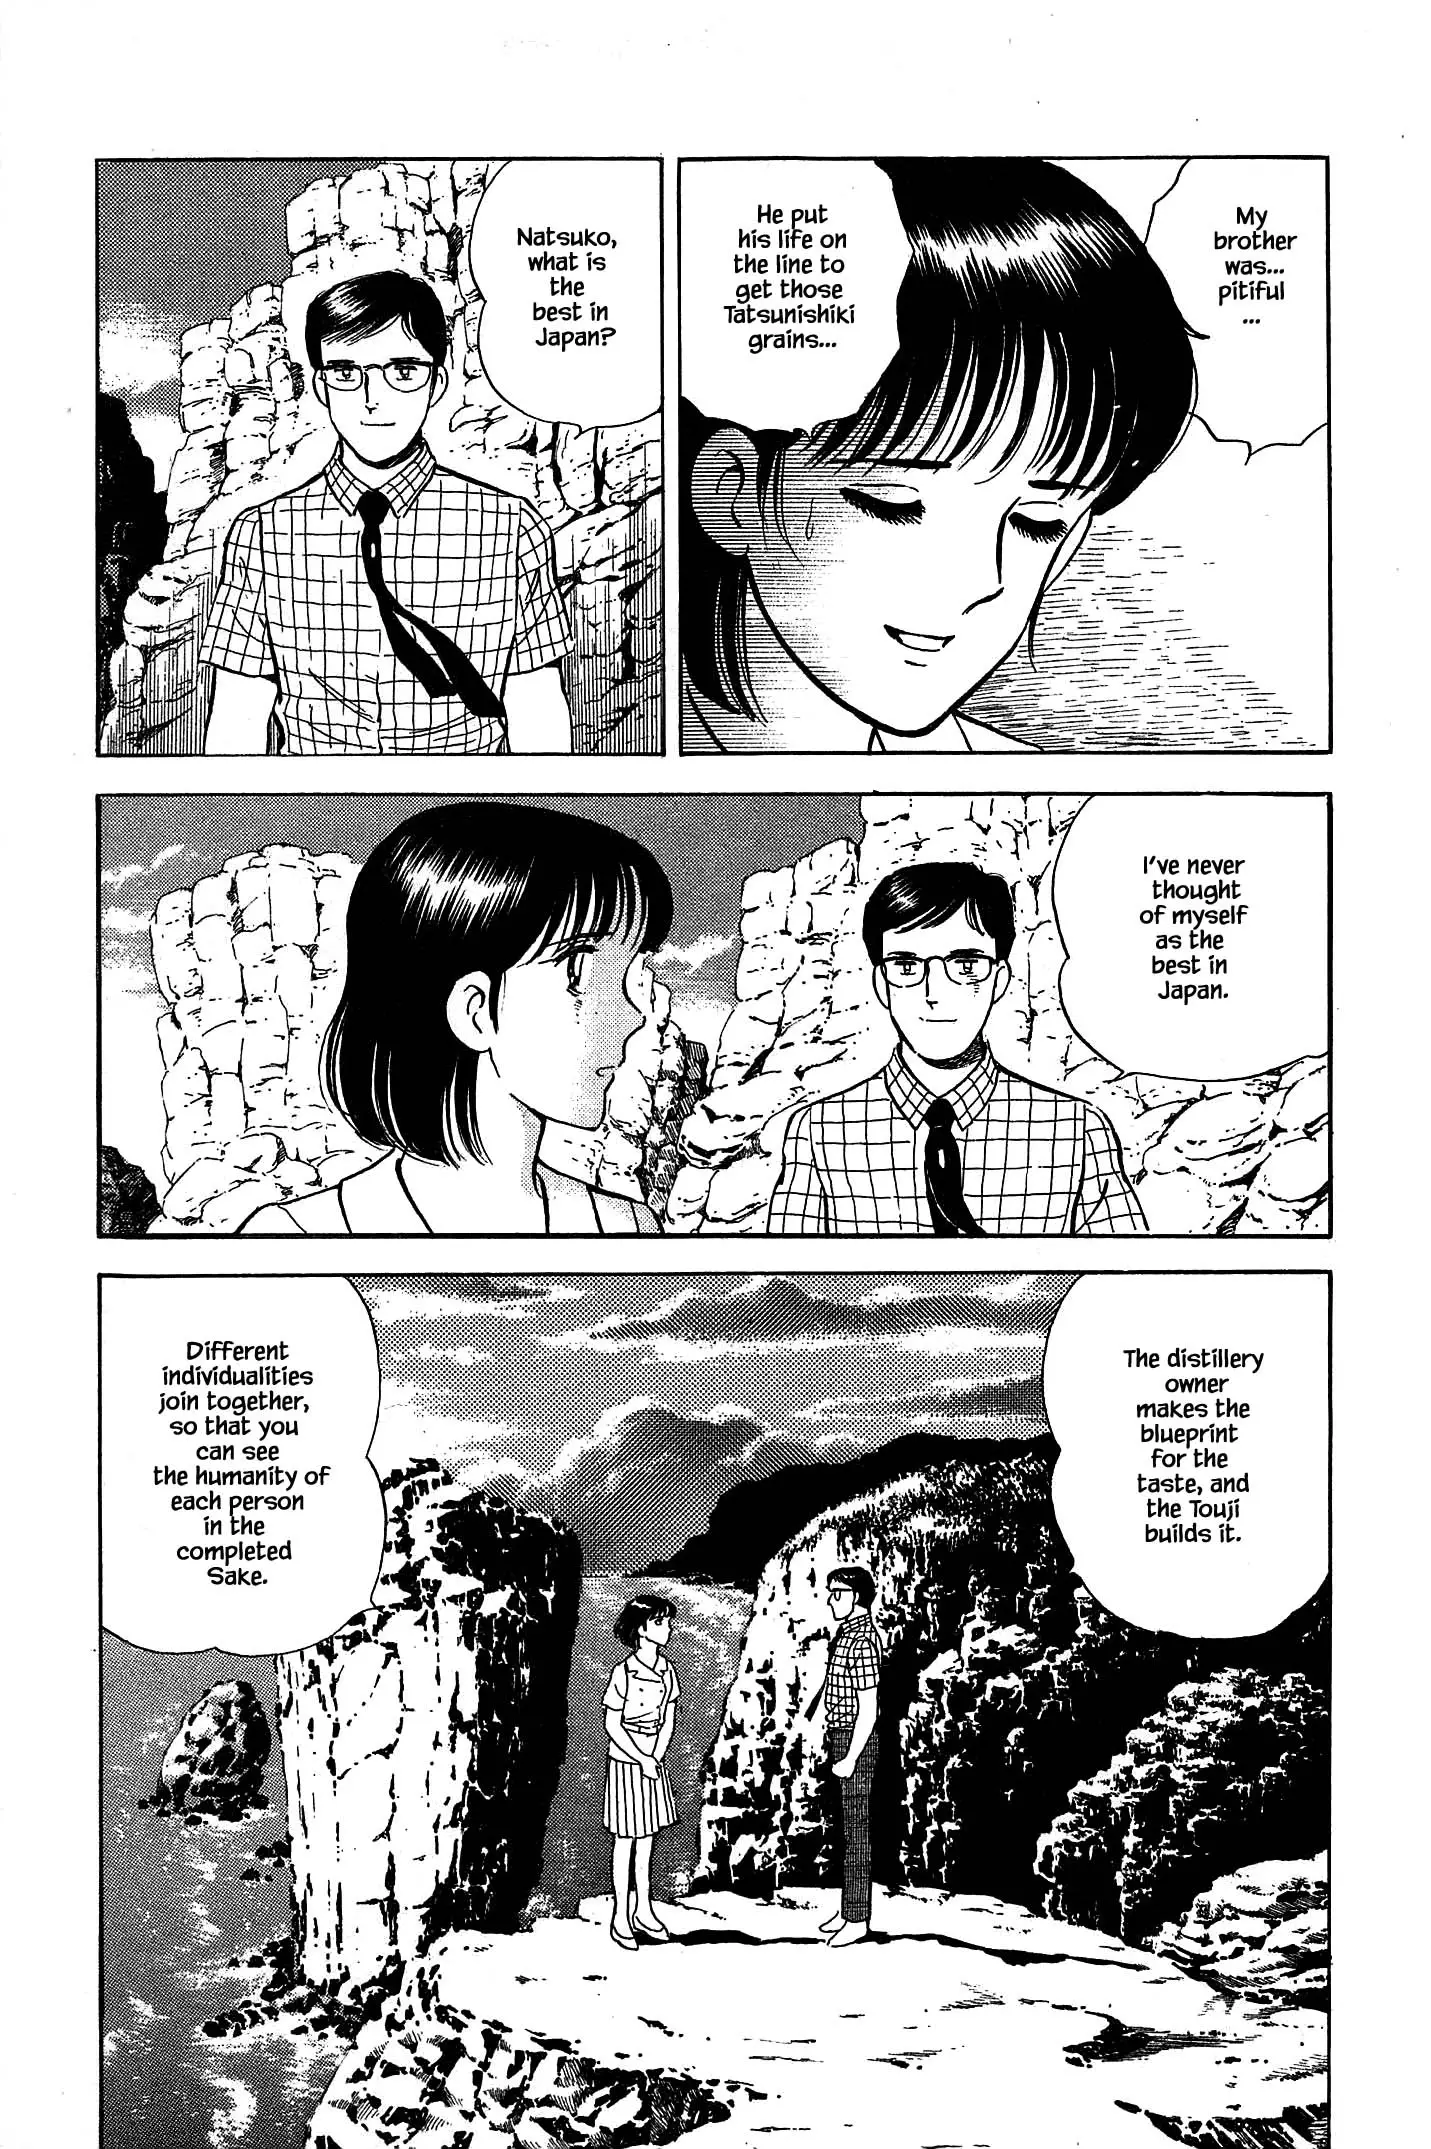 Natsuko's Sake - 93 page 17-ad647643